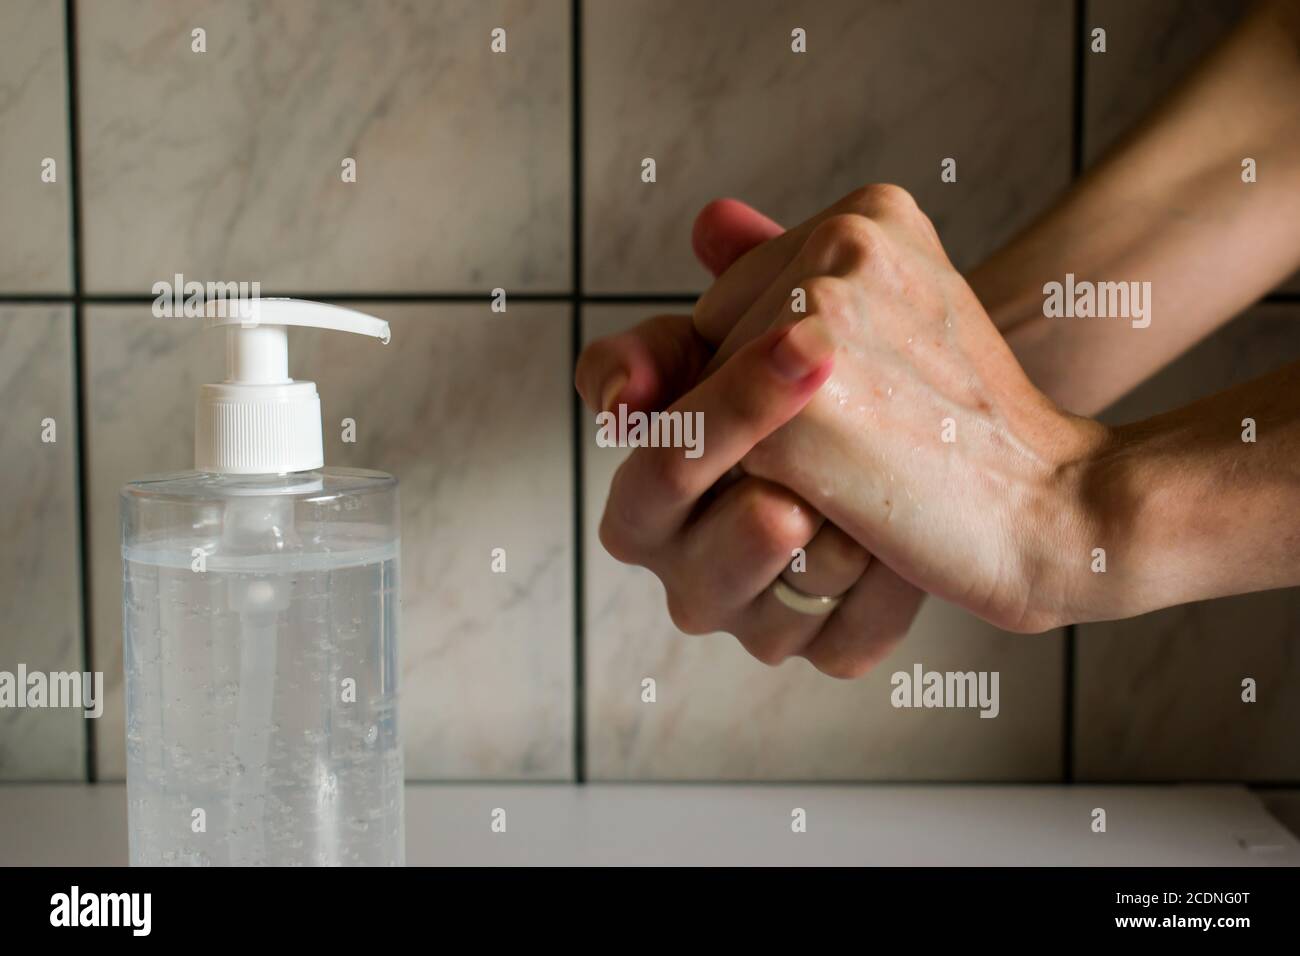 Donna che usa l'igienizzatore per le mani. L'azione di strofinare l'igienizzatore per le mani su entrambe le mani. Foto Stock